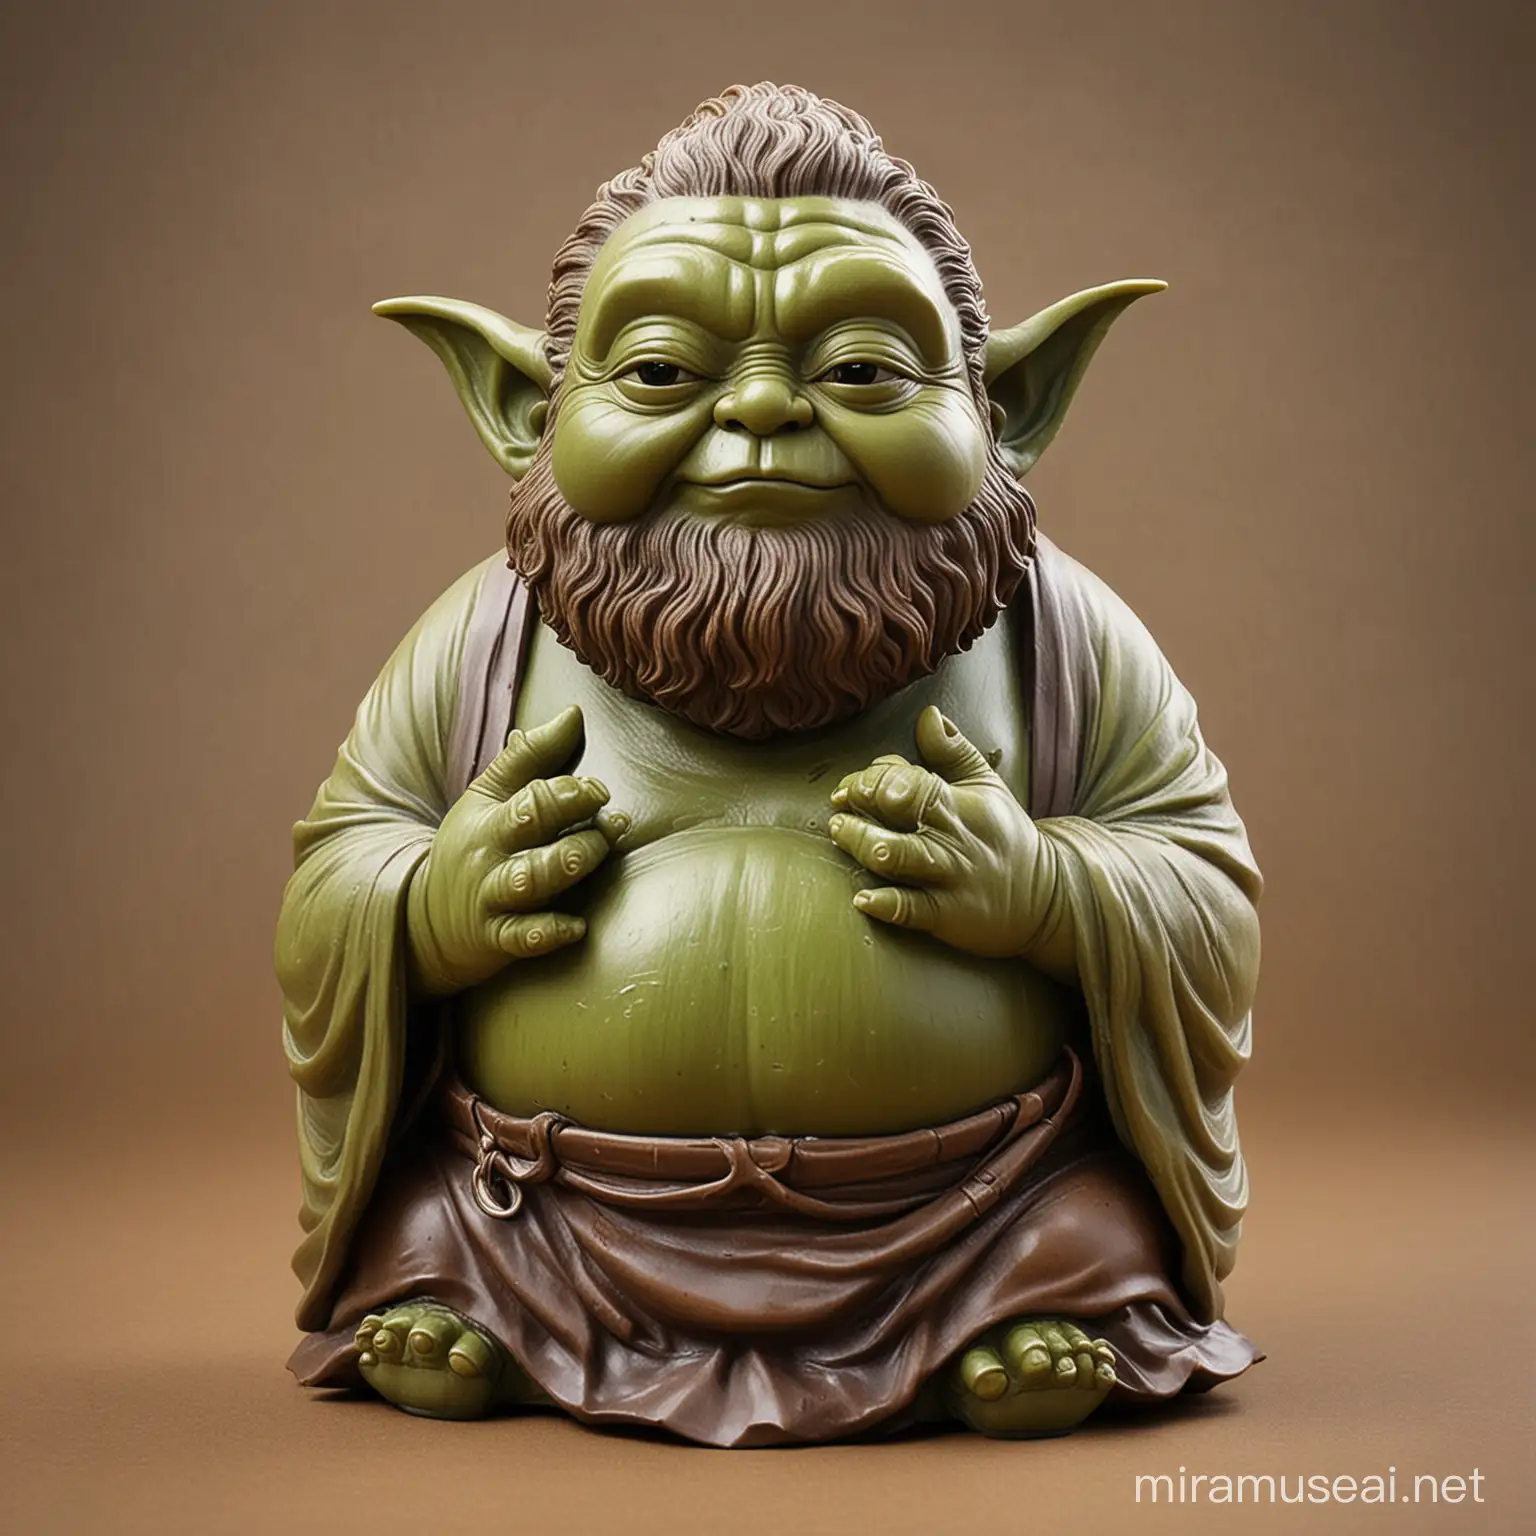 Zen Master Yoda in a Serene Meditation Space